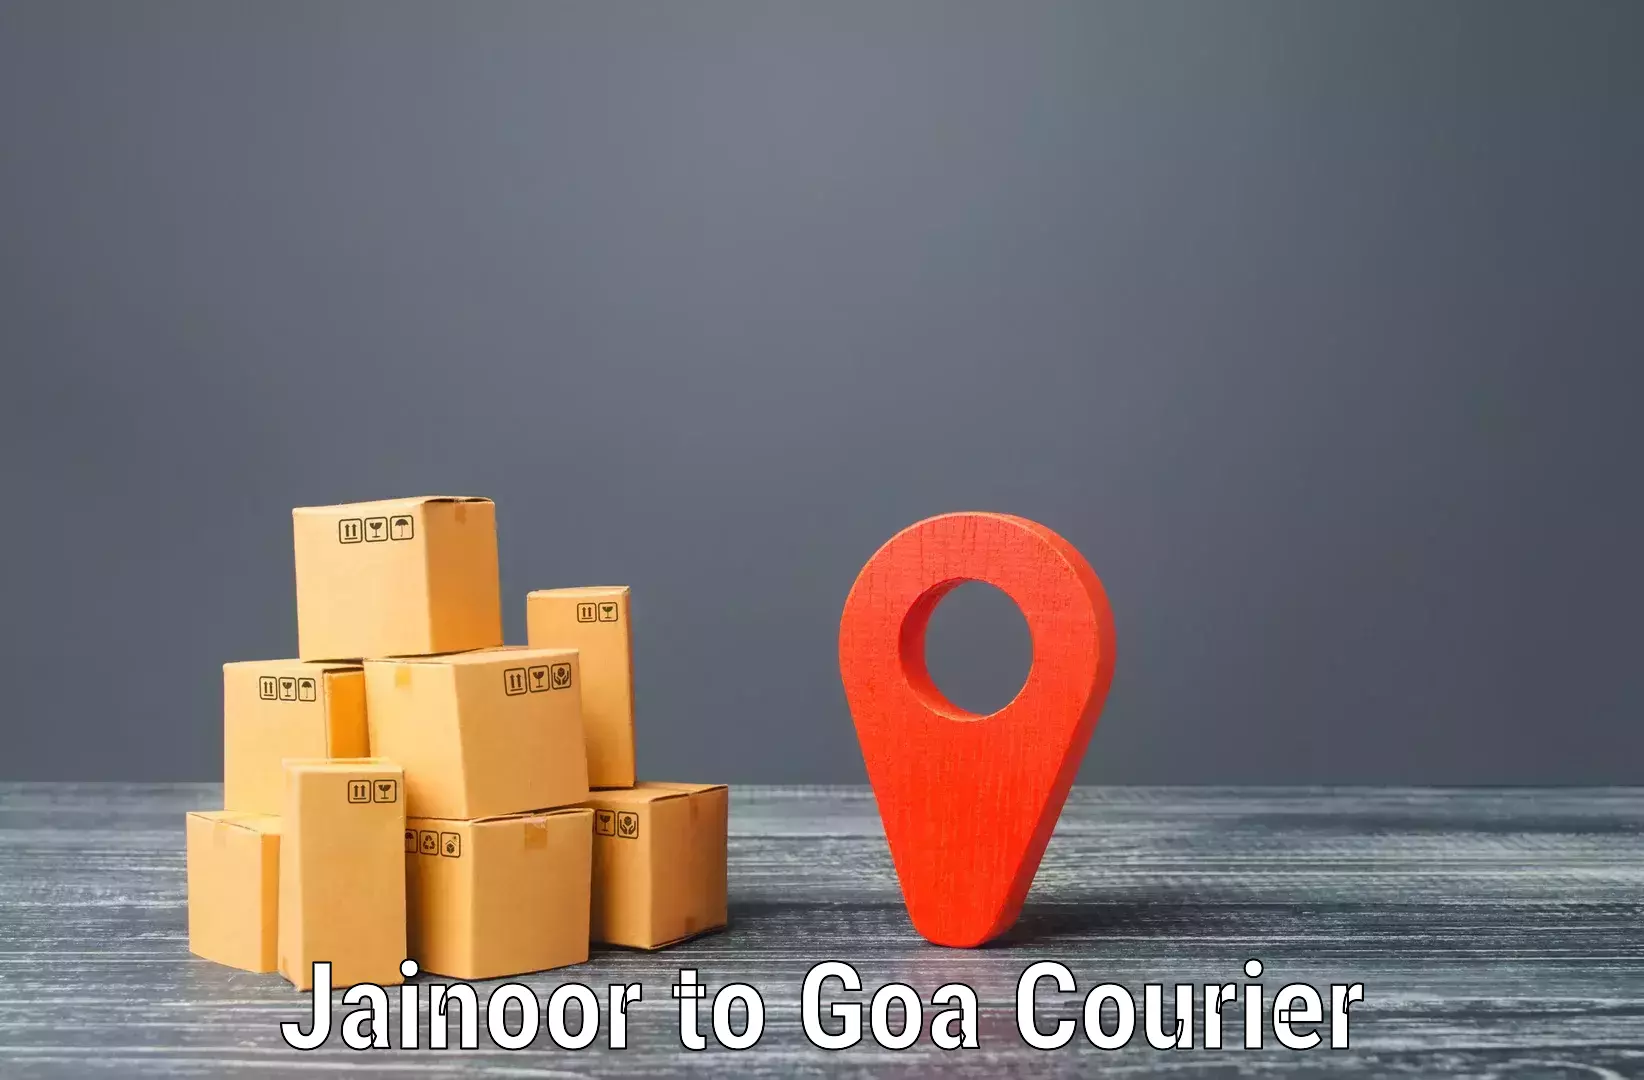 Secure freight services Jainoor to Panaji